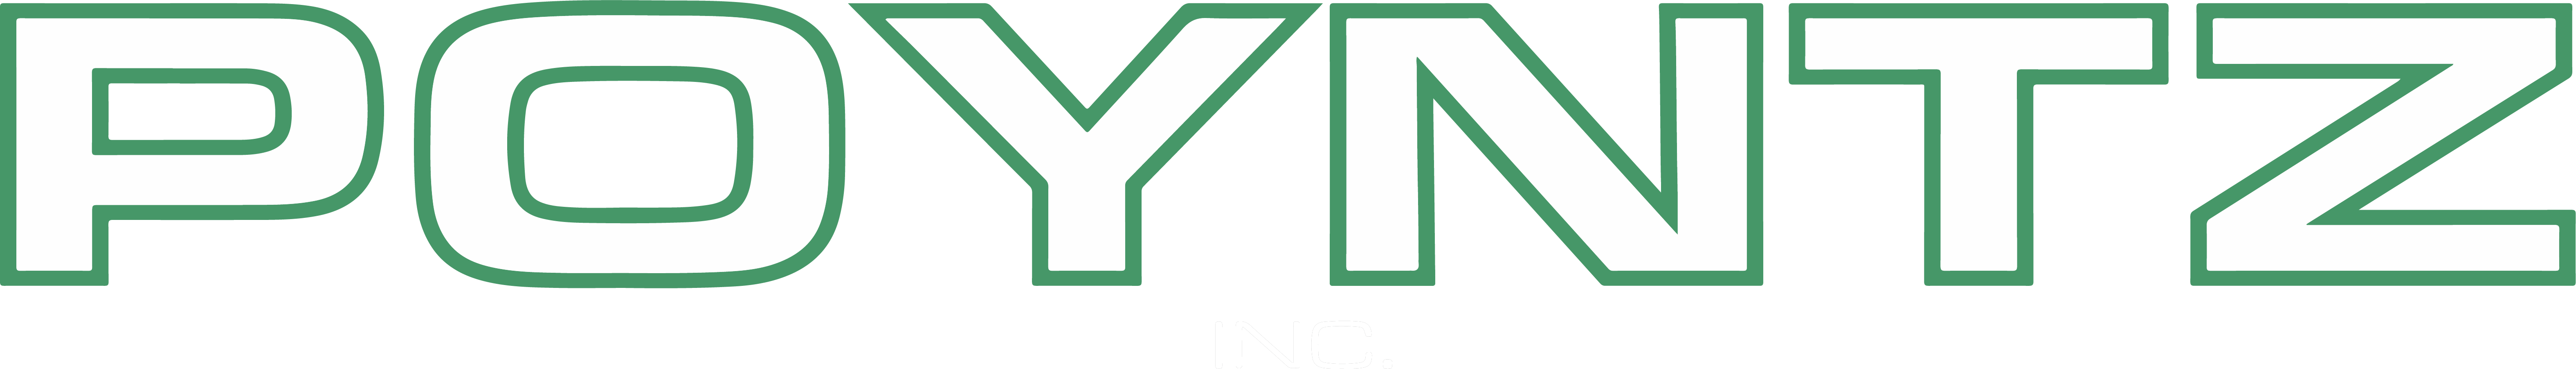 Poyntz Inc